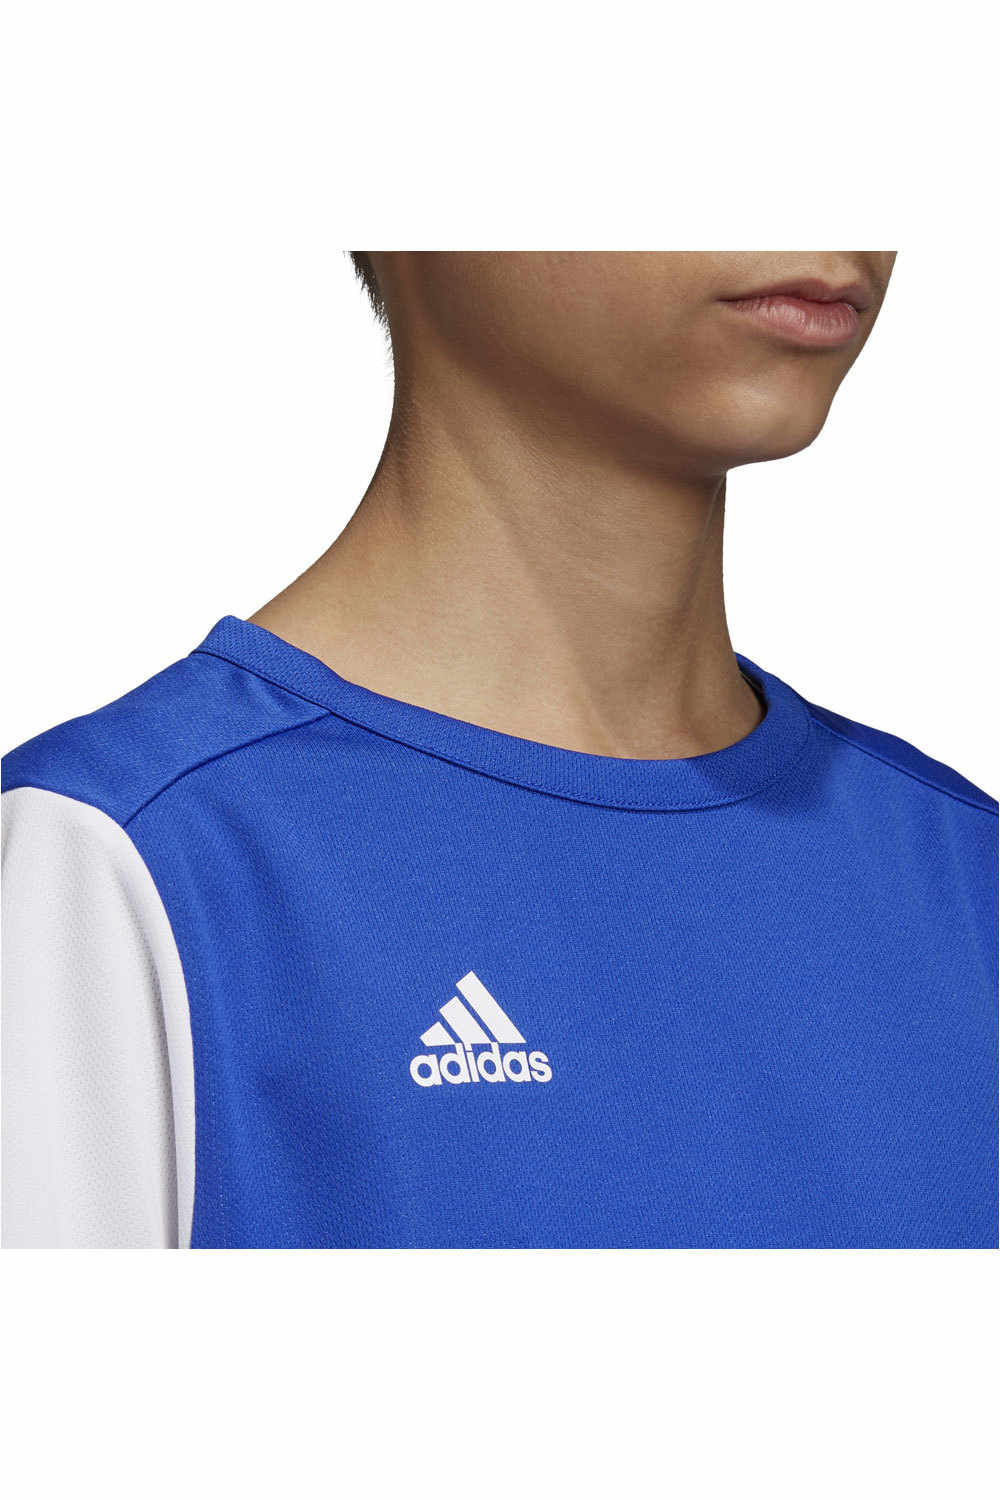 adidas camisetas entrenamiento futbol manga corta niño Estro 19 vista detalle